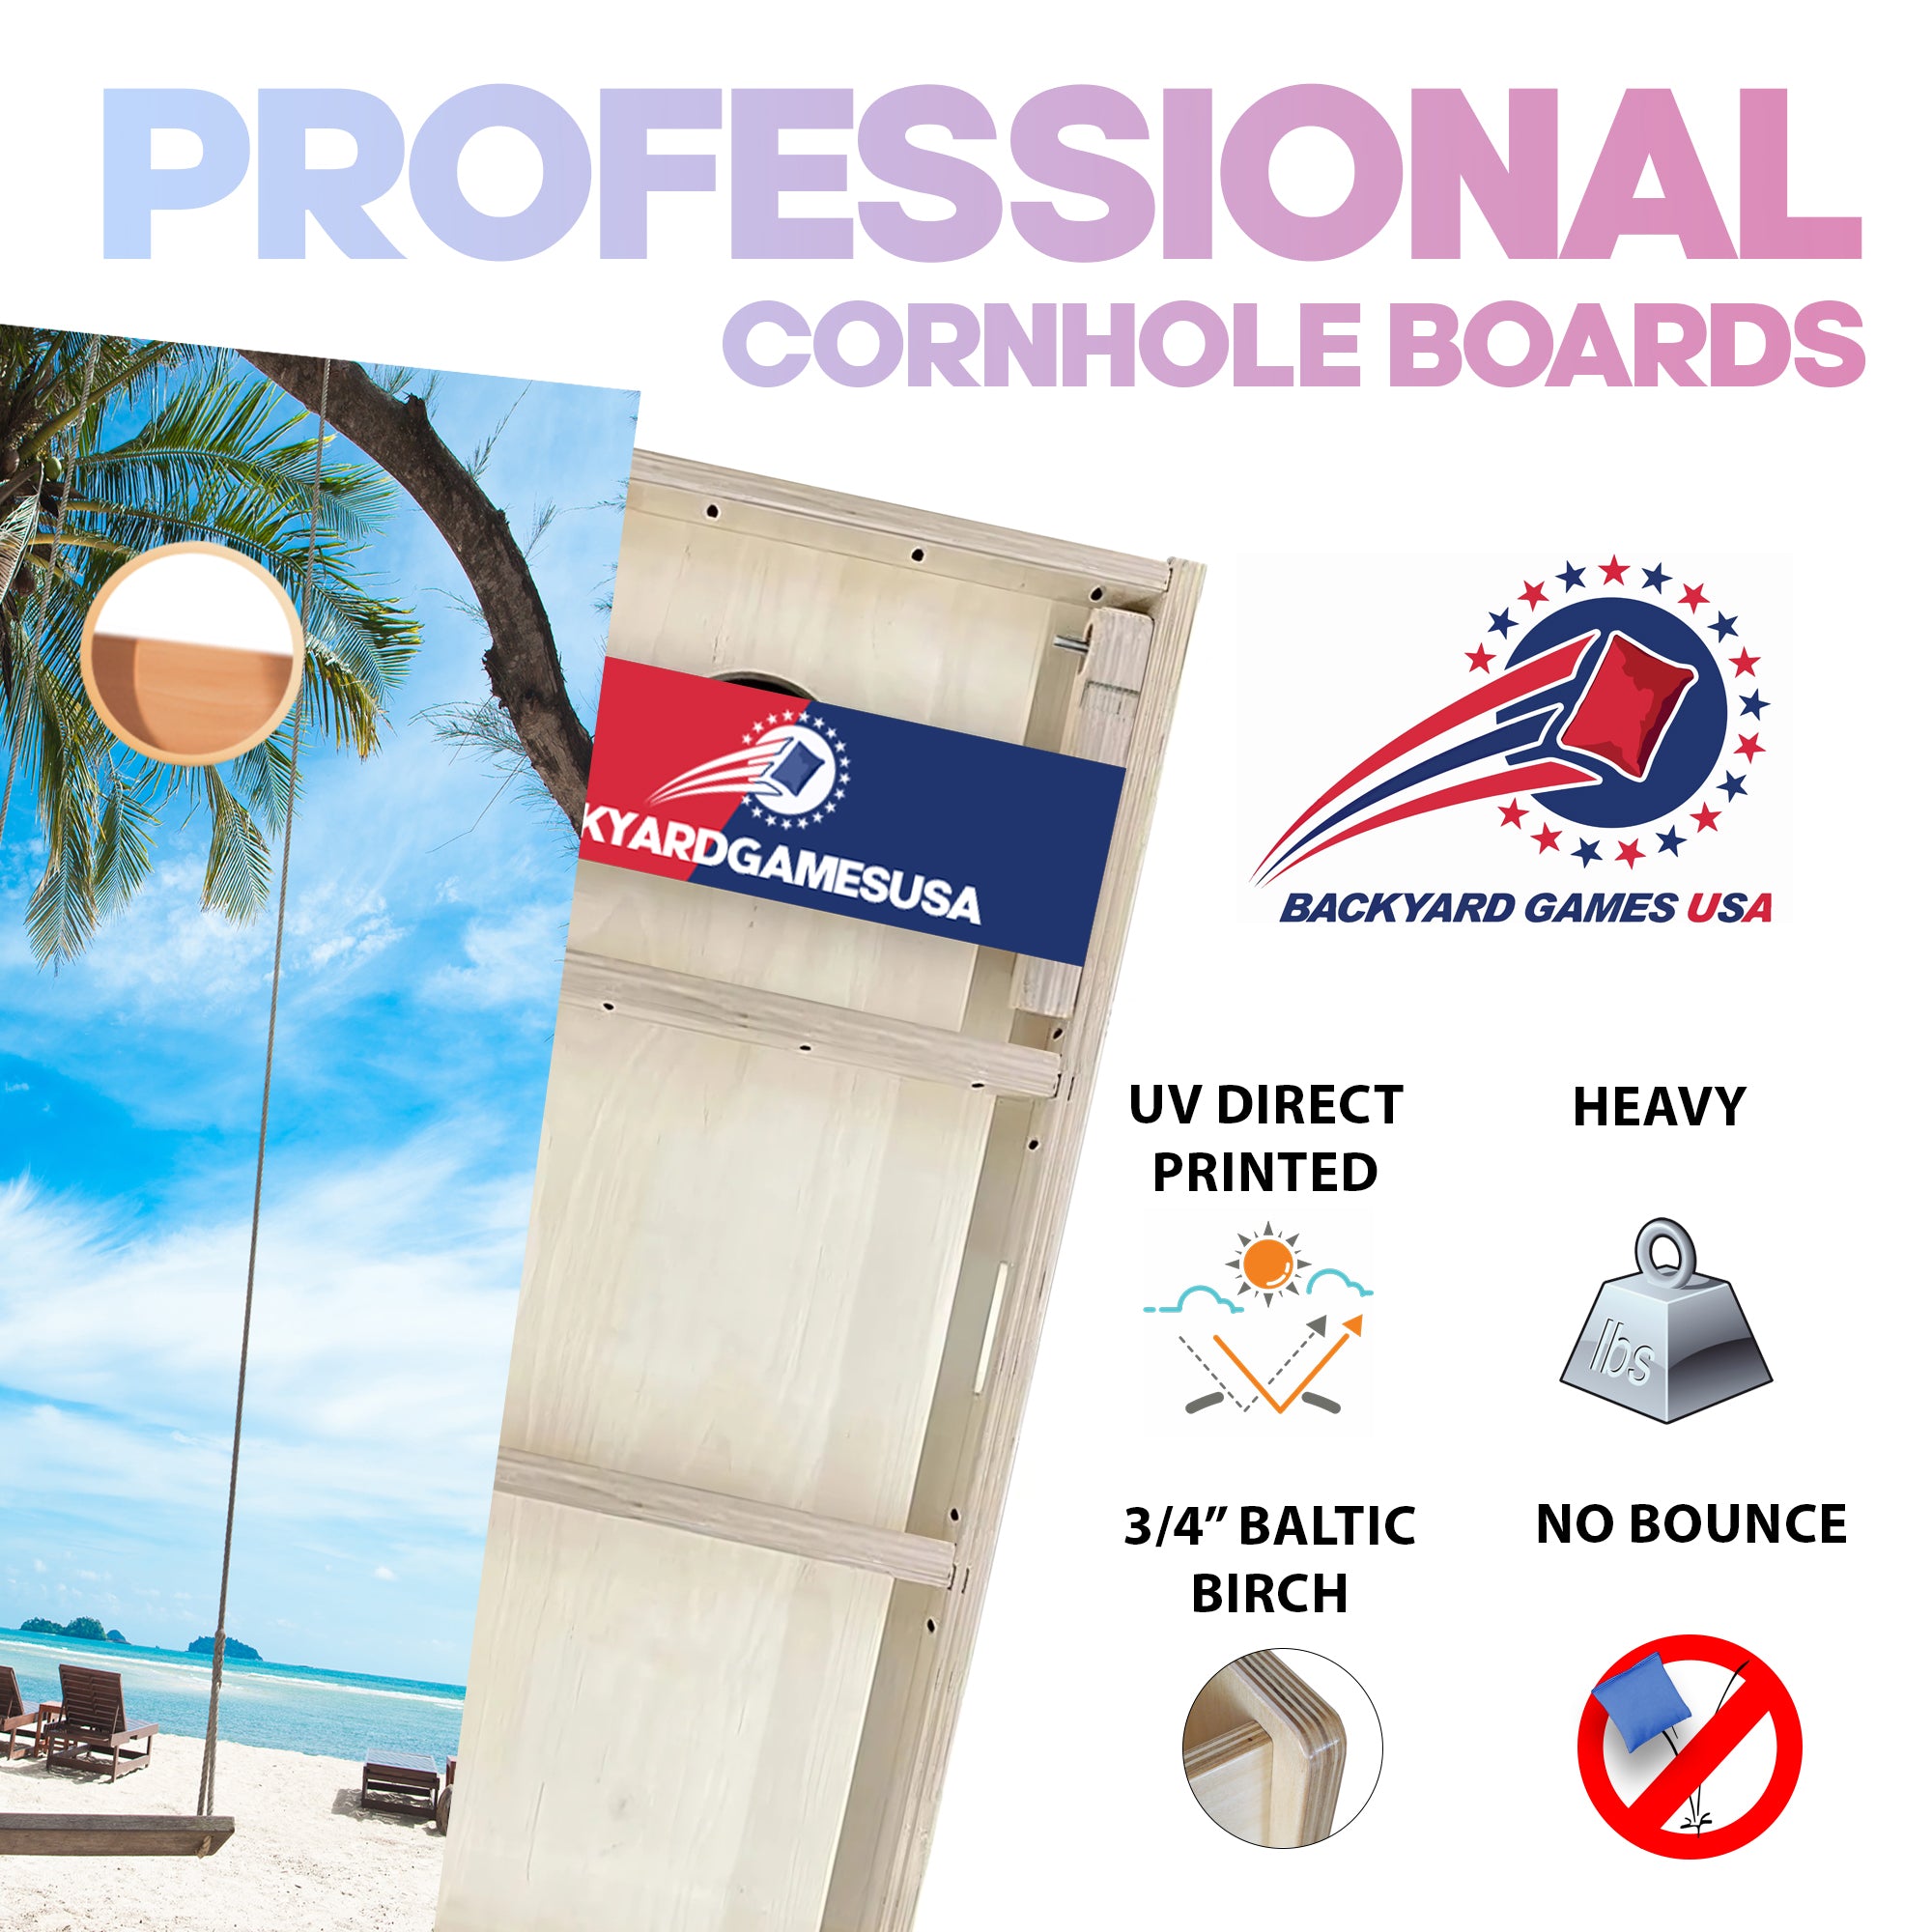 Ocean Pier Professional Cornhole Boards